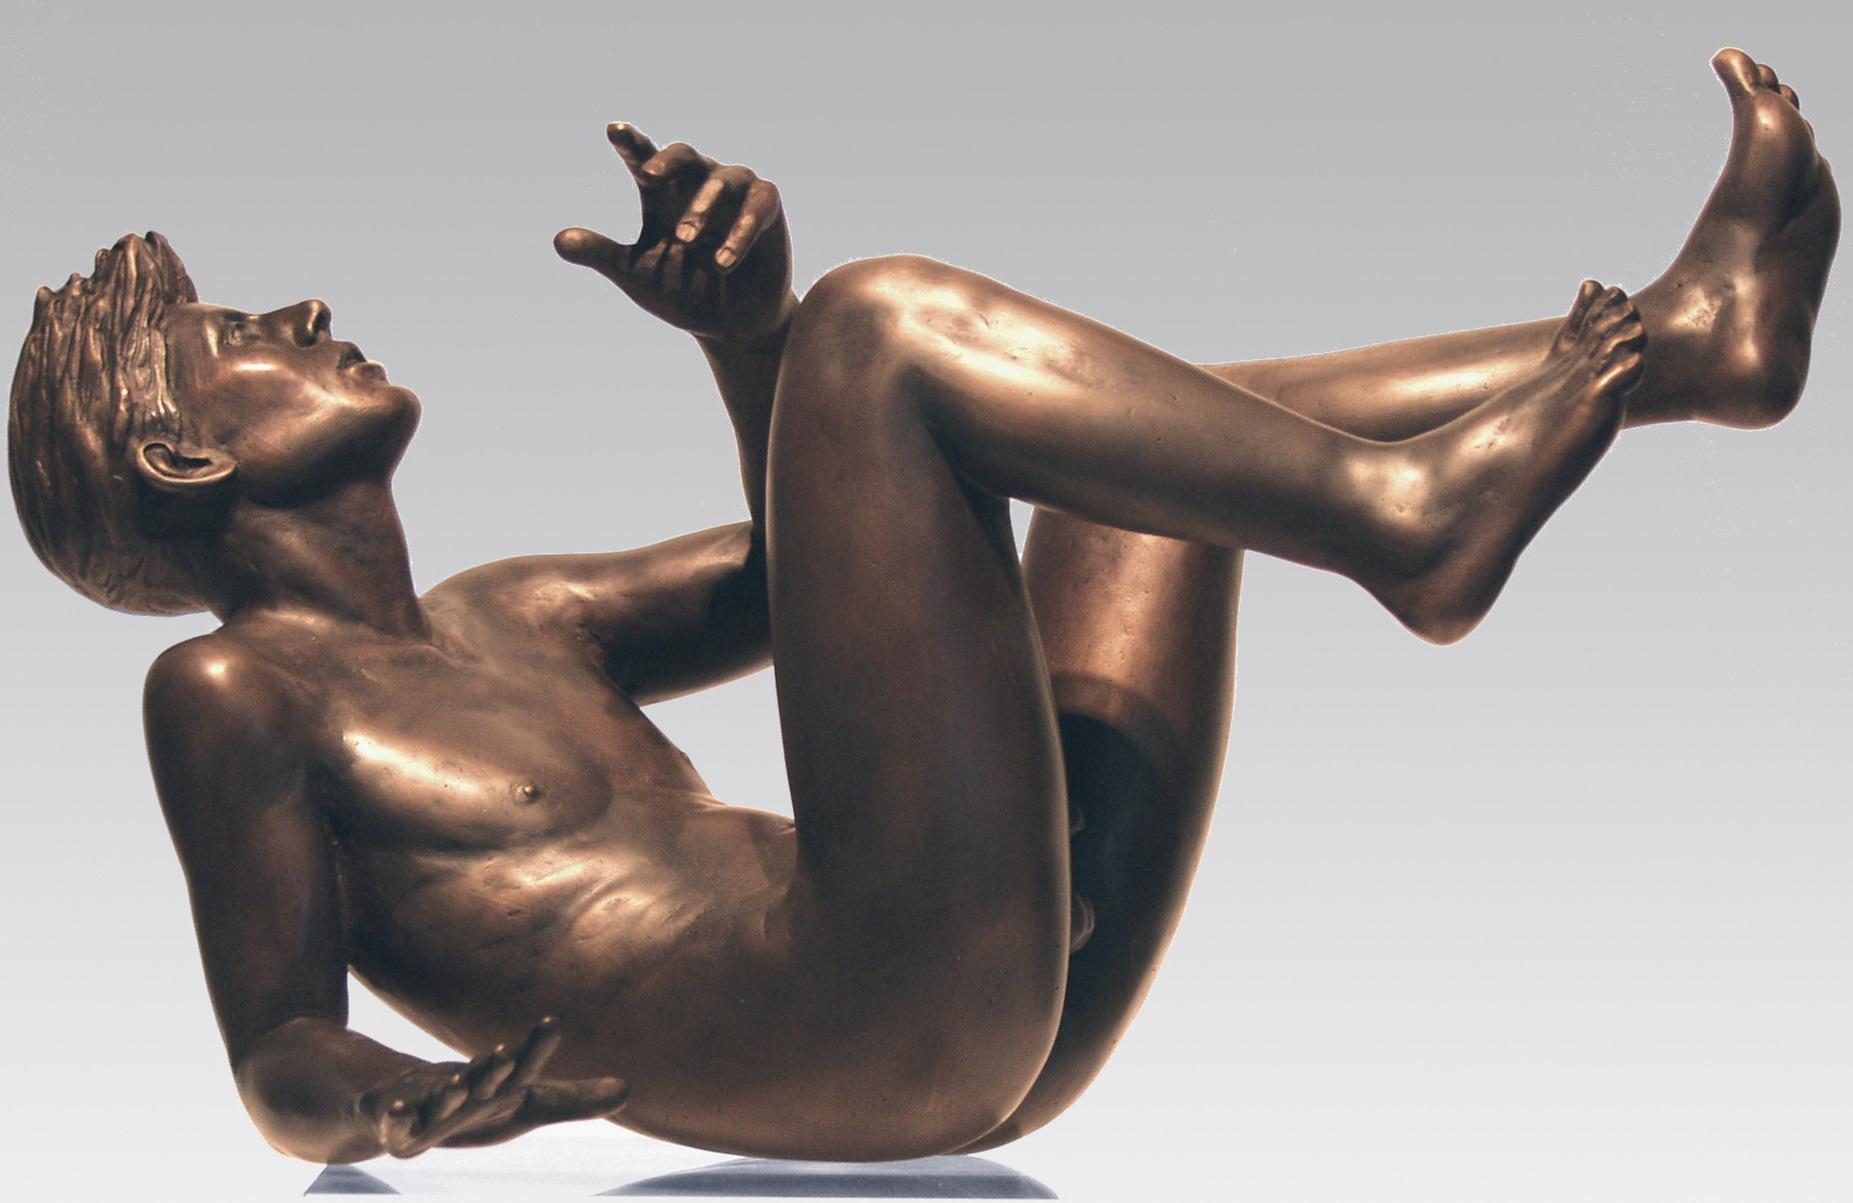 Vallende Homme en chute libre Sculpture en bronze Contemporaine
Les statues d'Erwin Meijer sont subtiles avec une écriture reconnaissable et personnelle.
Ils respirent l'atmosphère d'un poème narratif, où le lecteur ne rencontre pas seulement